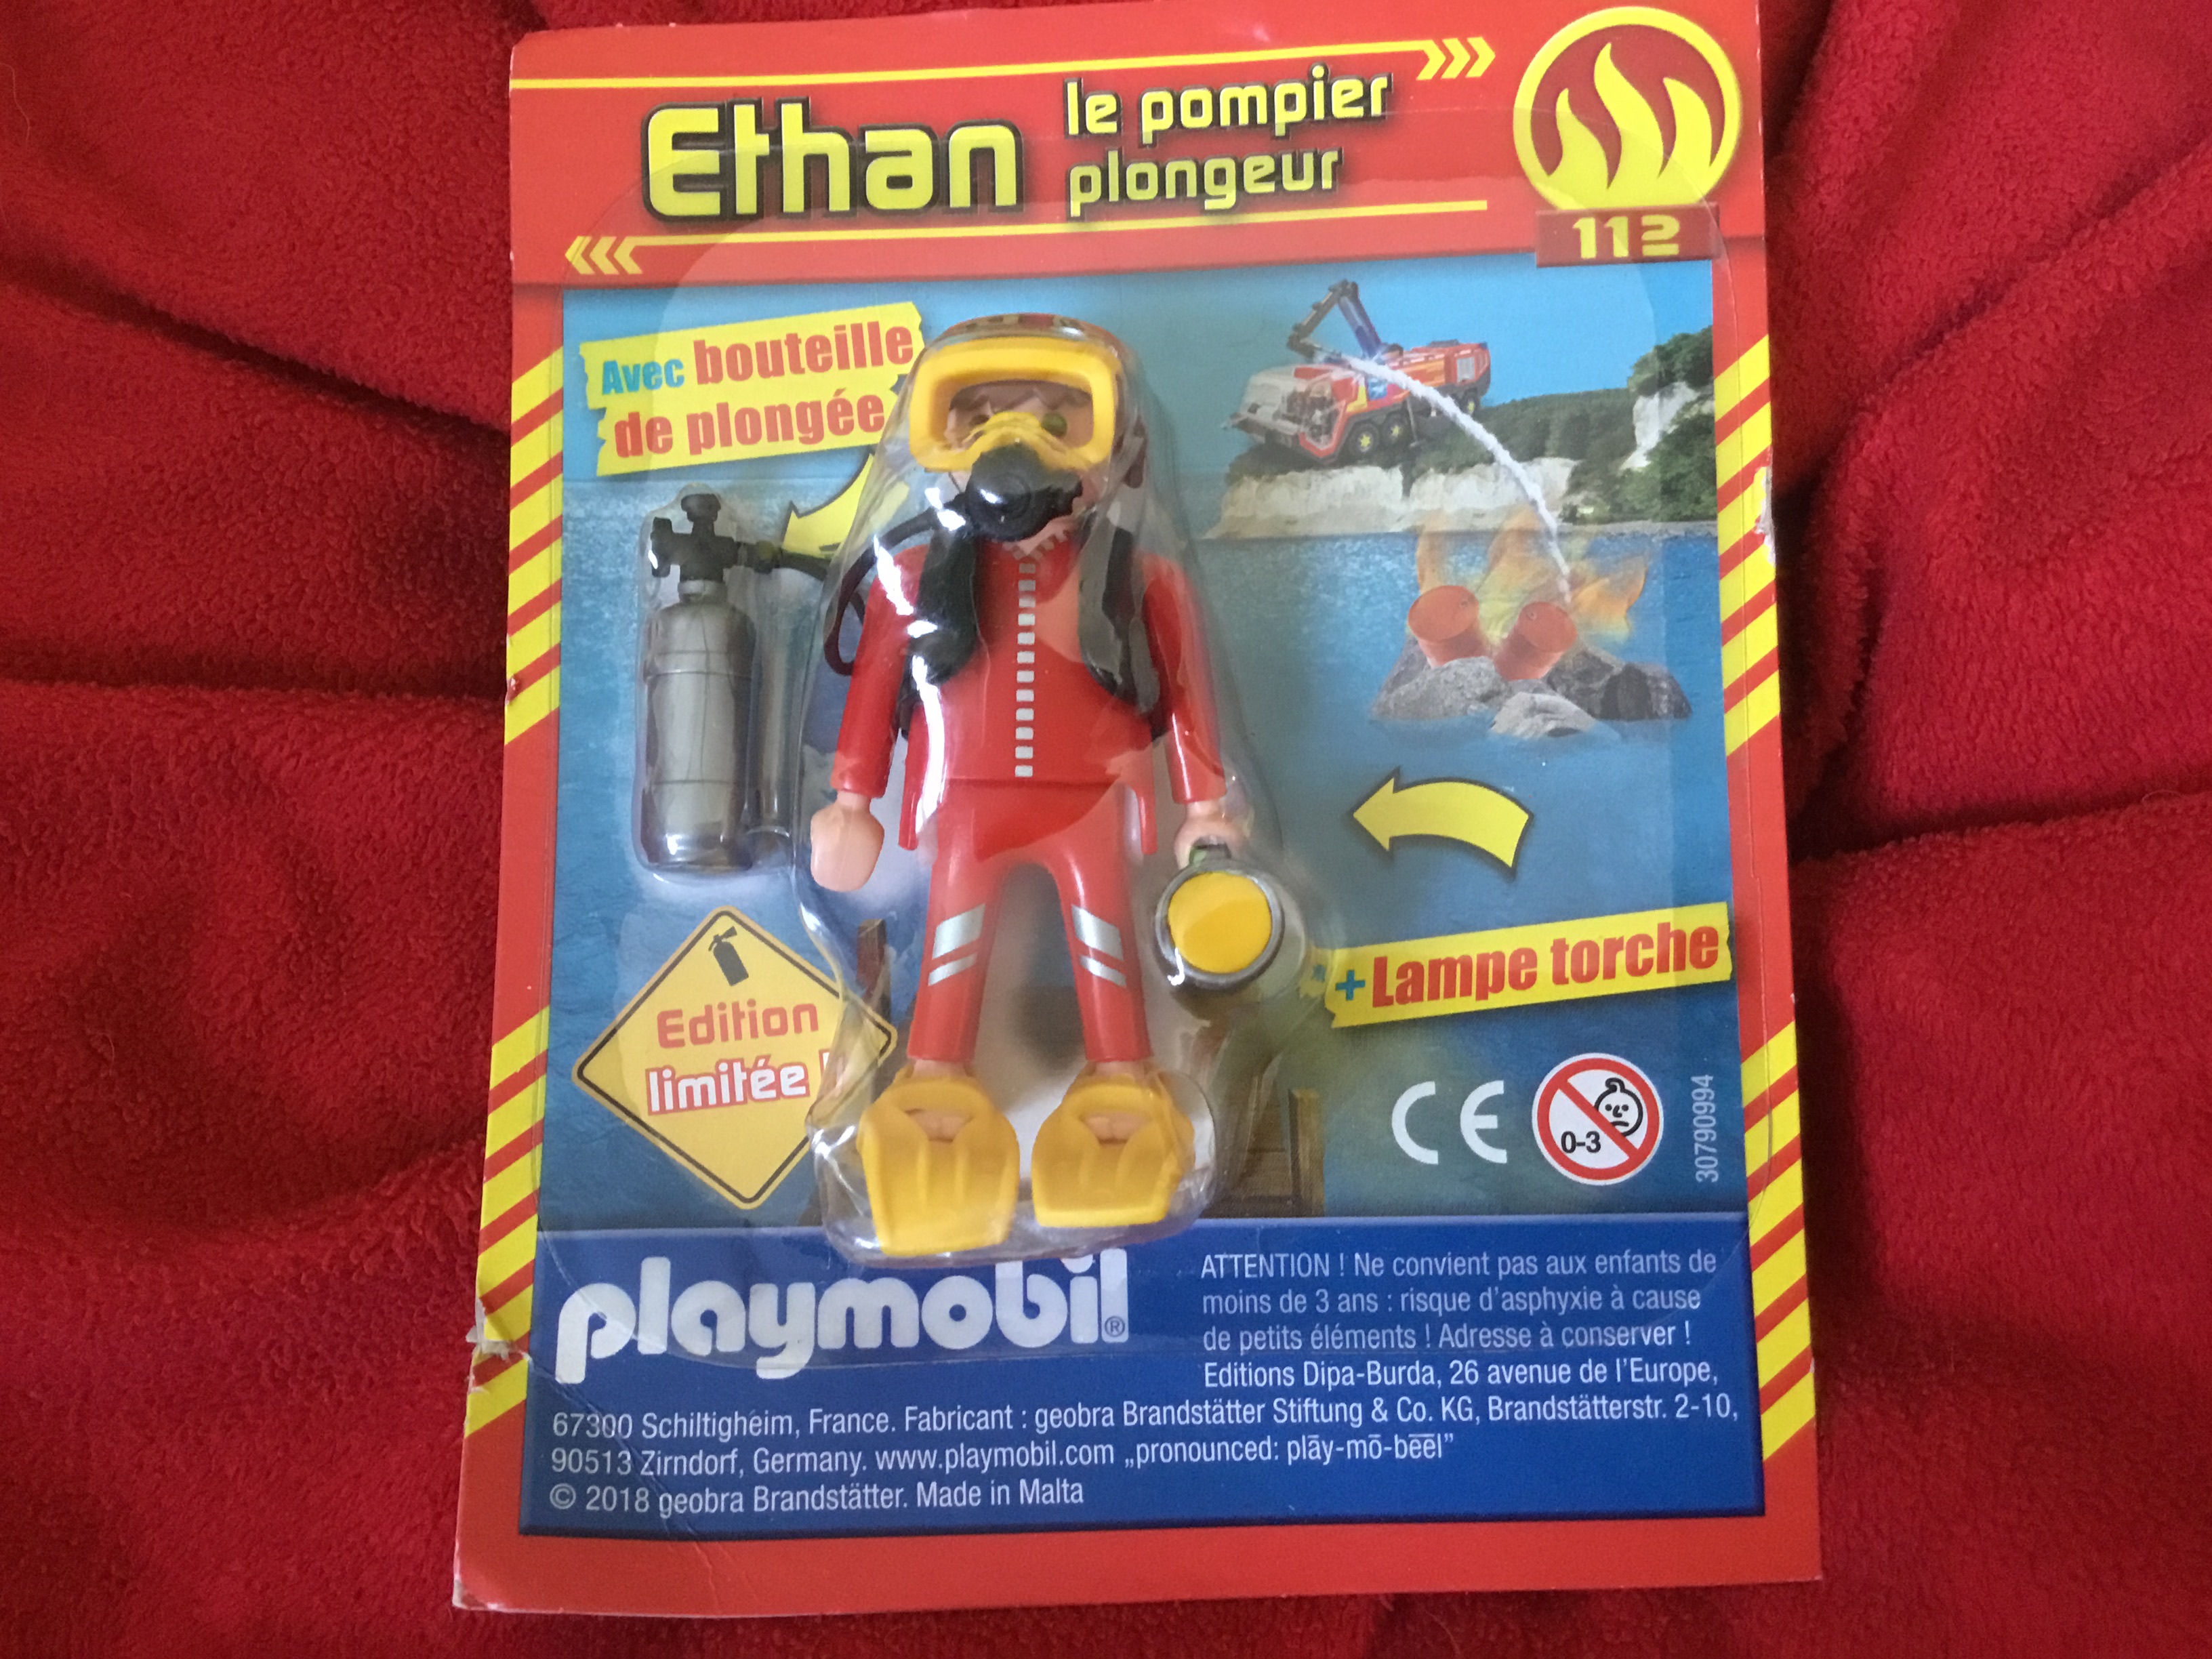 ethan le pompier plongeur avec bouteille-lampe torche-edition limite playmobil 